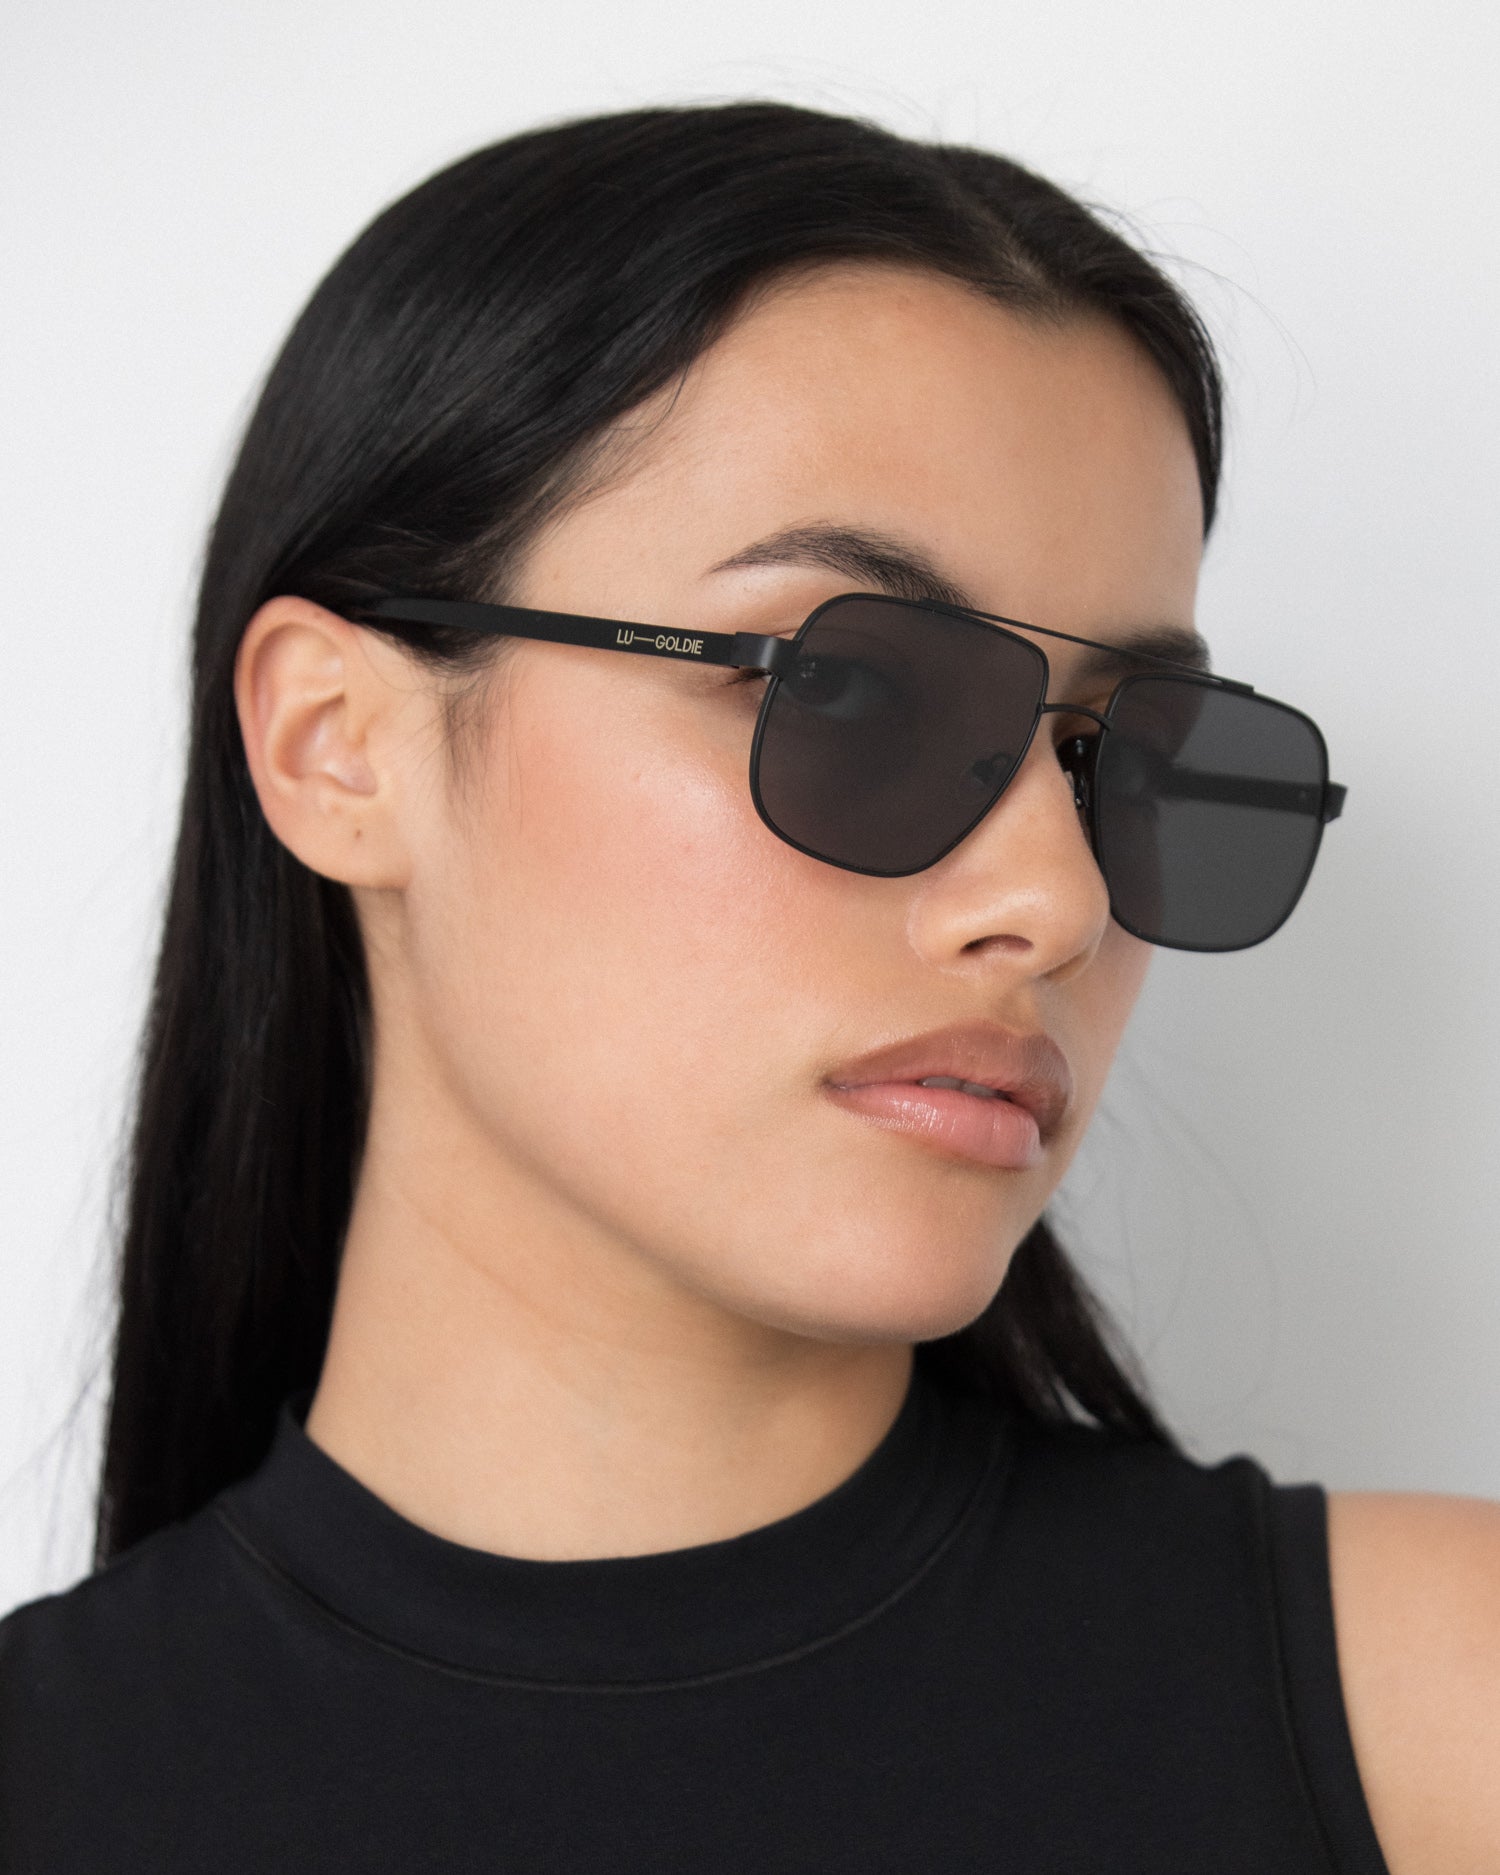 Amelia Sunglasses in Black by LU GOLDIE Eyewear